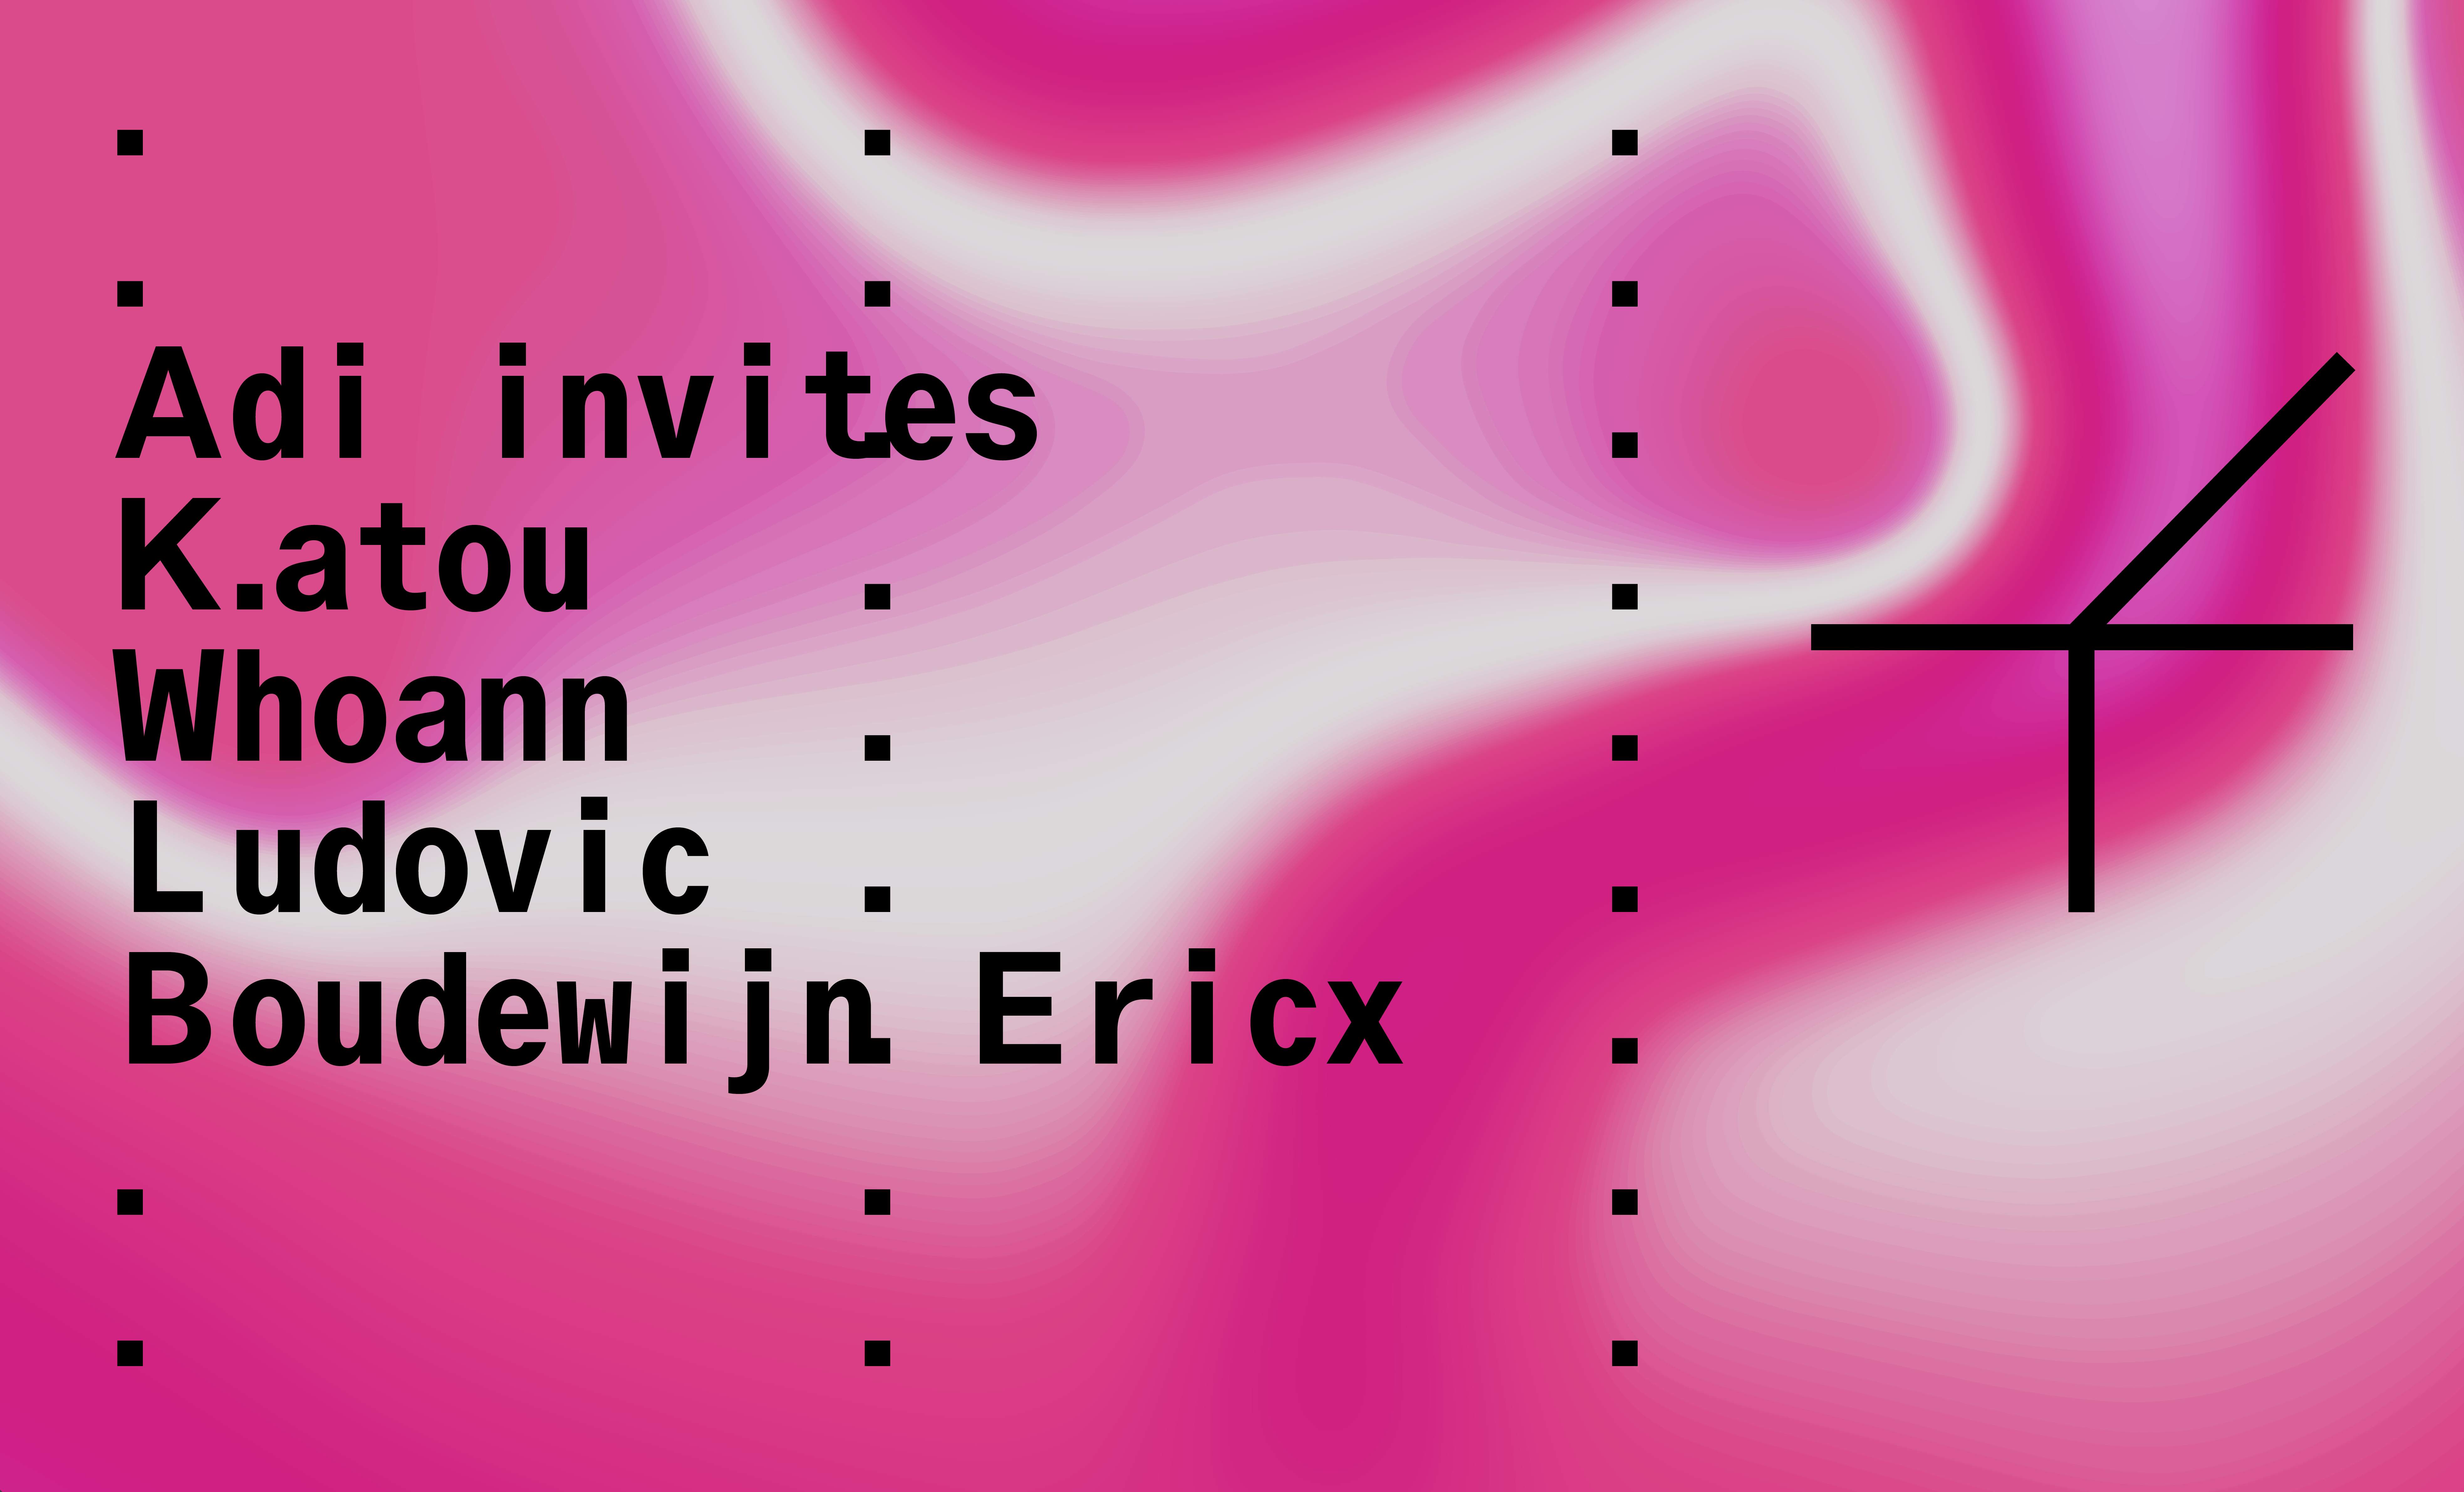 Funke_Adi invites K.atou, Whoann, Ludovic, Boudewijn Ericx - フライヤー表